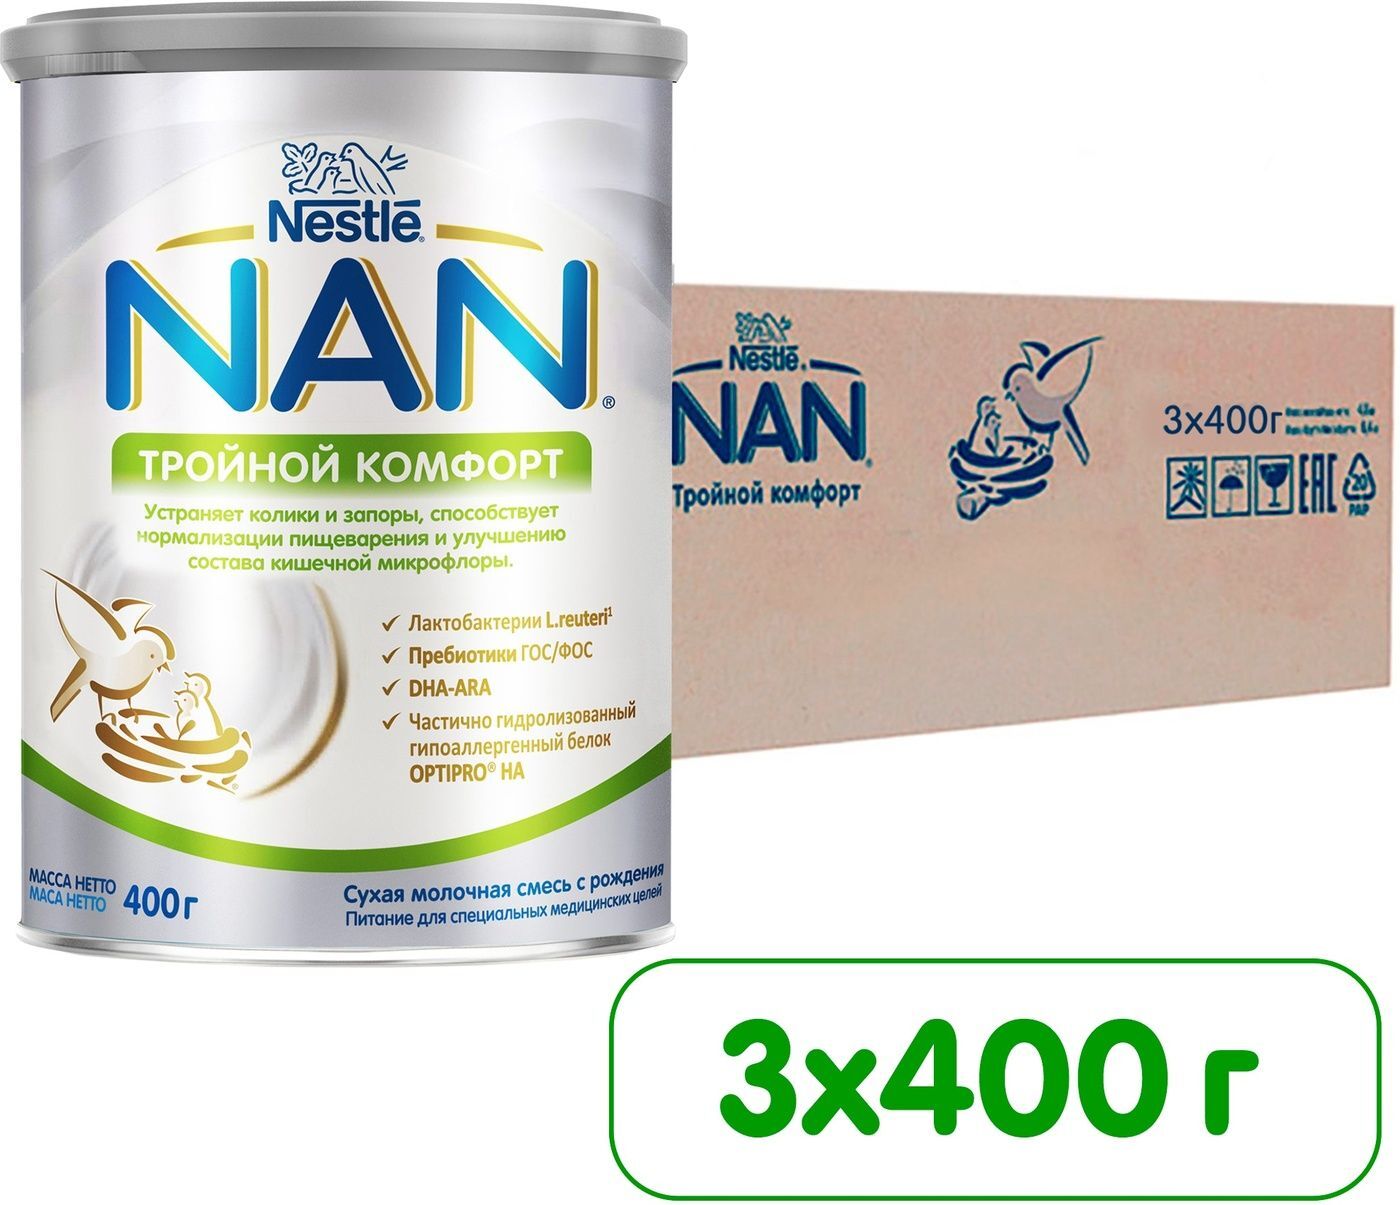 Смесь nan (Nestlé) комфорт (с рождения) 400 г